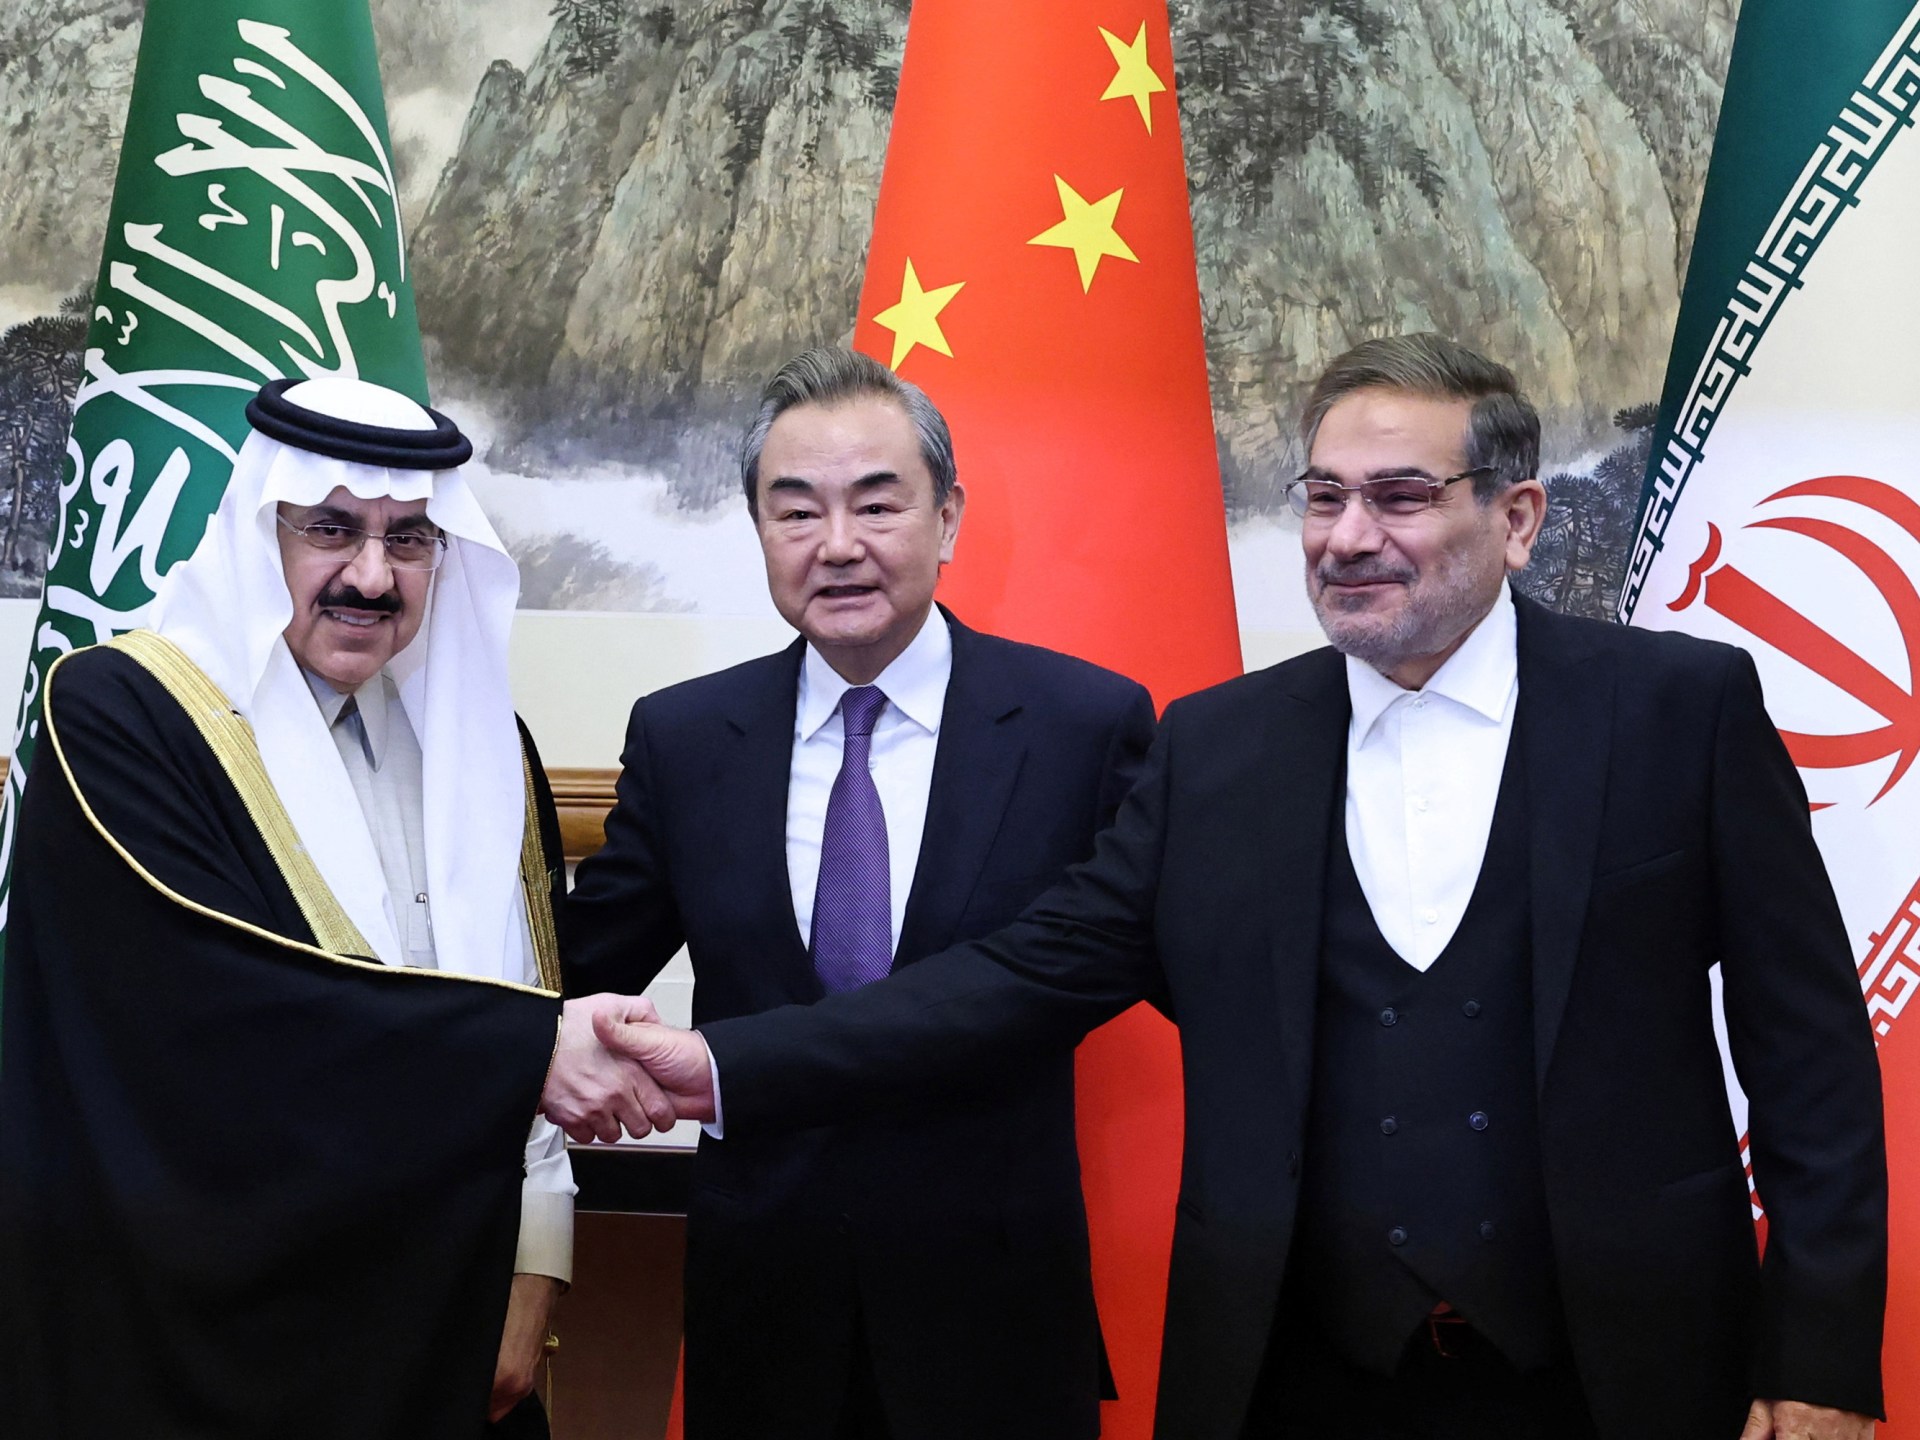 اتفاق سعودي إيراني توسطت فيه الصين يثير “موجة مصالحة” ، حسب وانغ |  أخبار السياسة